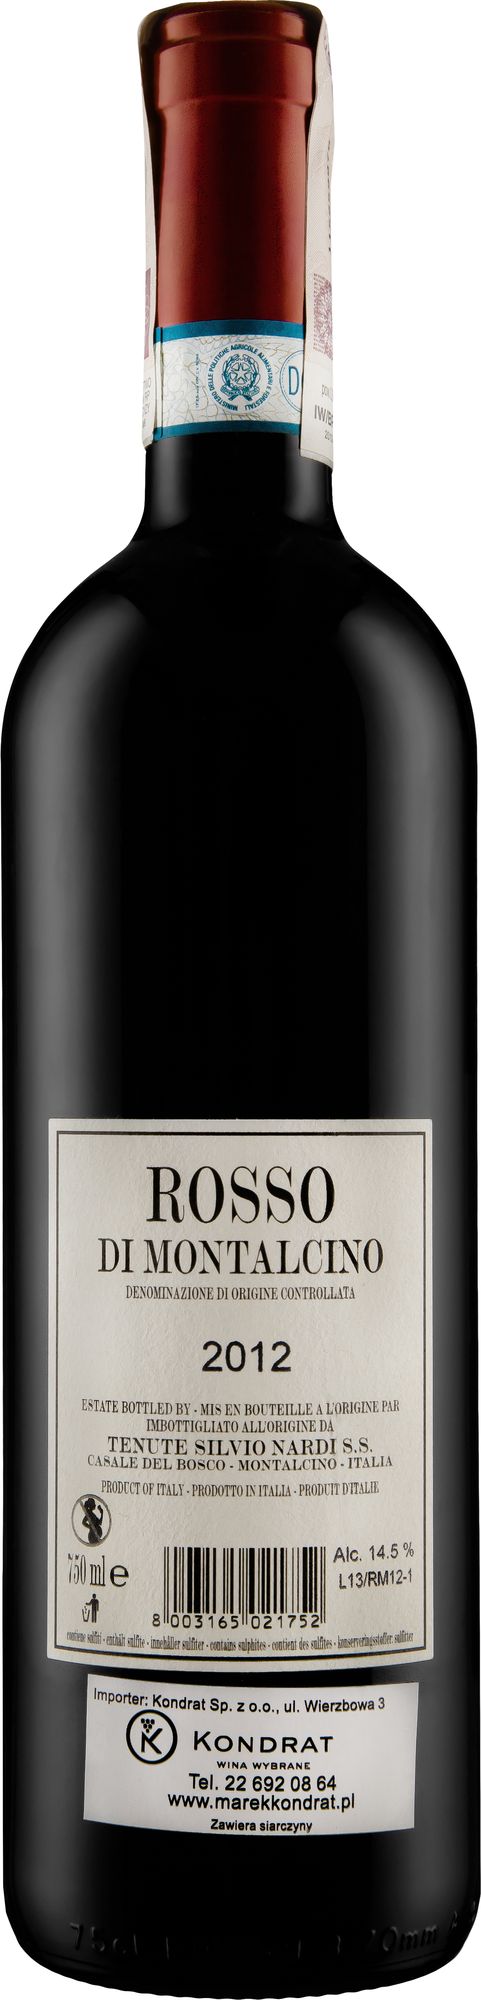 Wino S.Nardi Casale del Bosco Rosso di Montalcino DOC